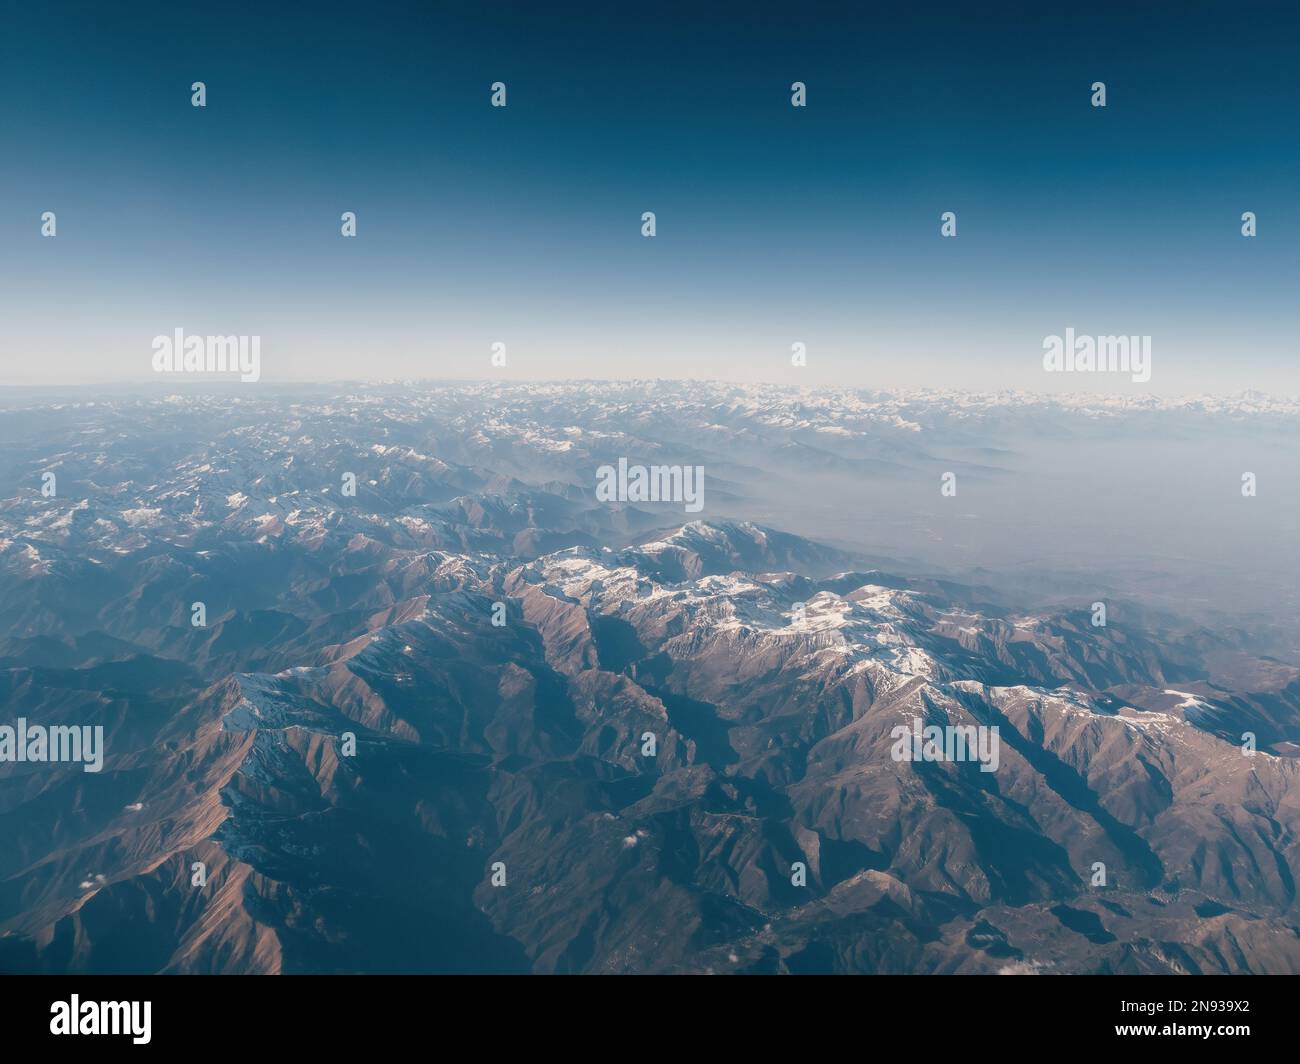 Increíblemente hermosa vista aérea panorámica de las cadenas montañosas  cubiertas de nieve de los Alpes. Vuelo sobre los picos de las montañas  alpinas cubiertas de nieve en algunos lugares Fotografía de stock -